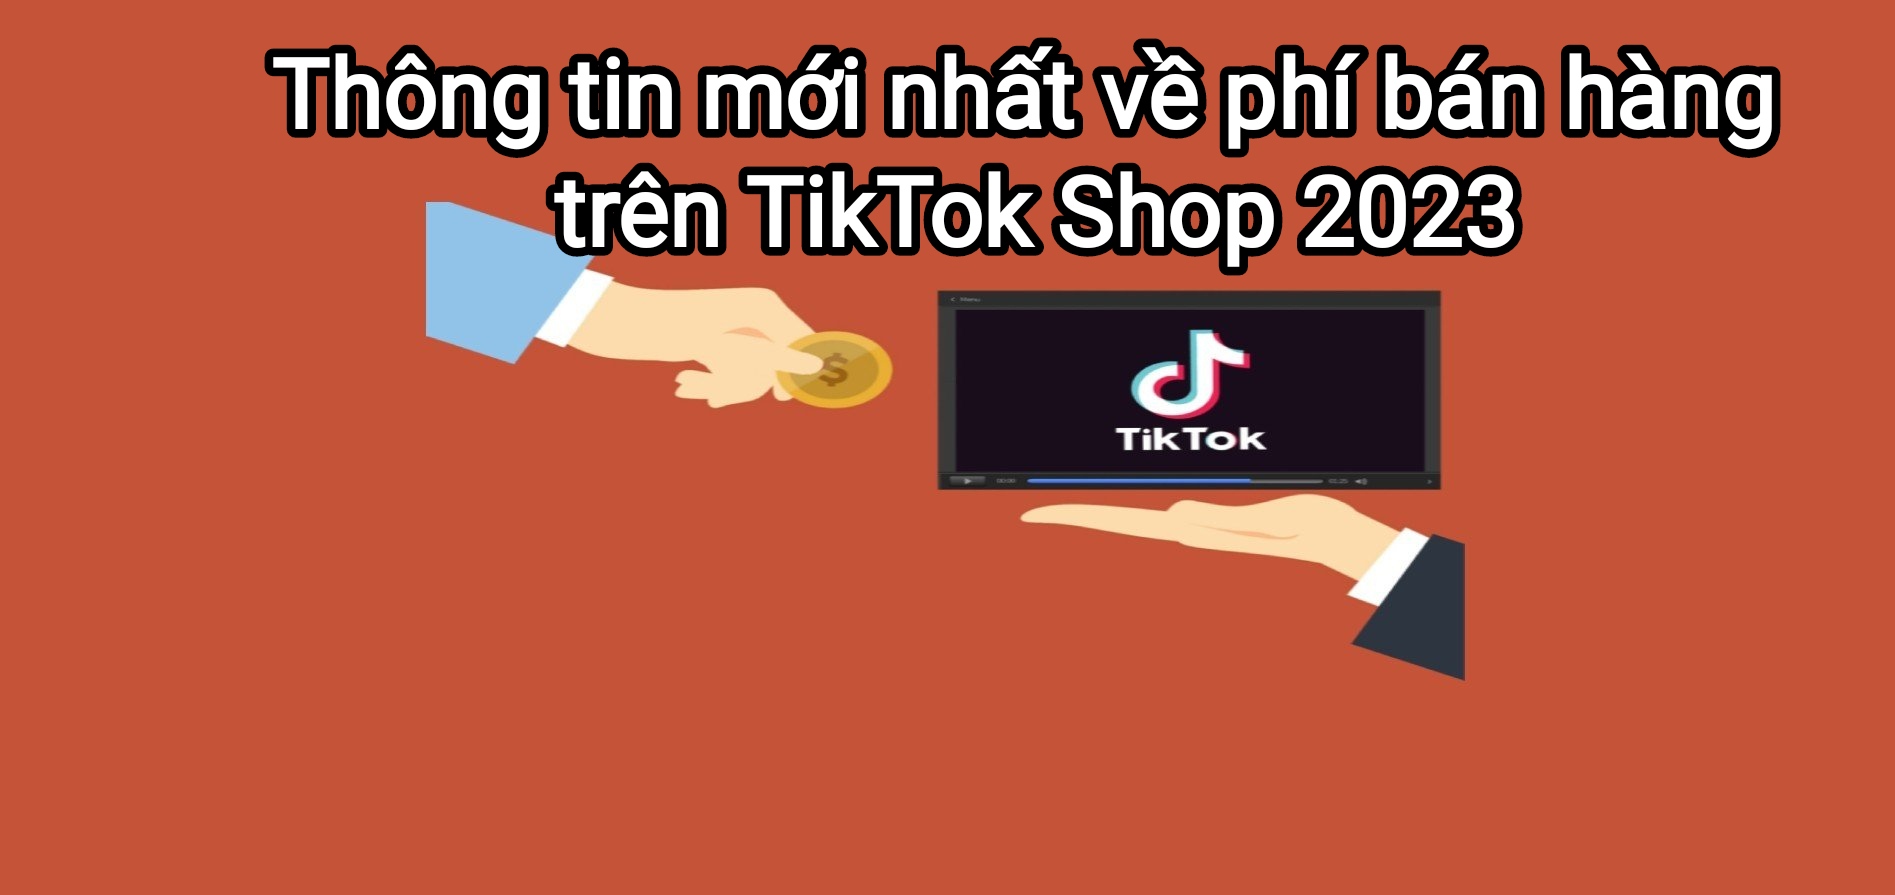 Phí sàn TikTok Shop 2023